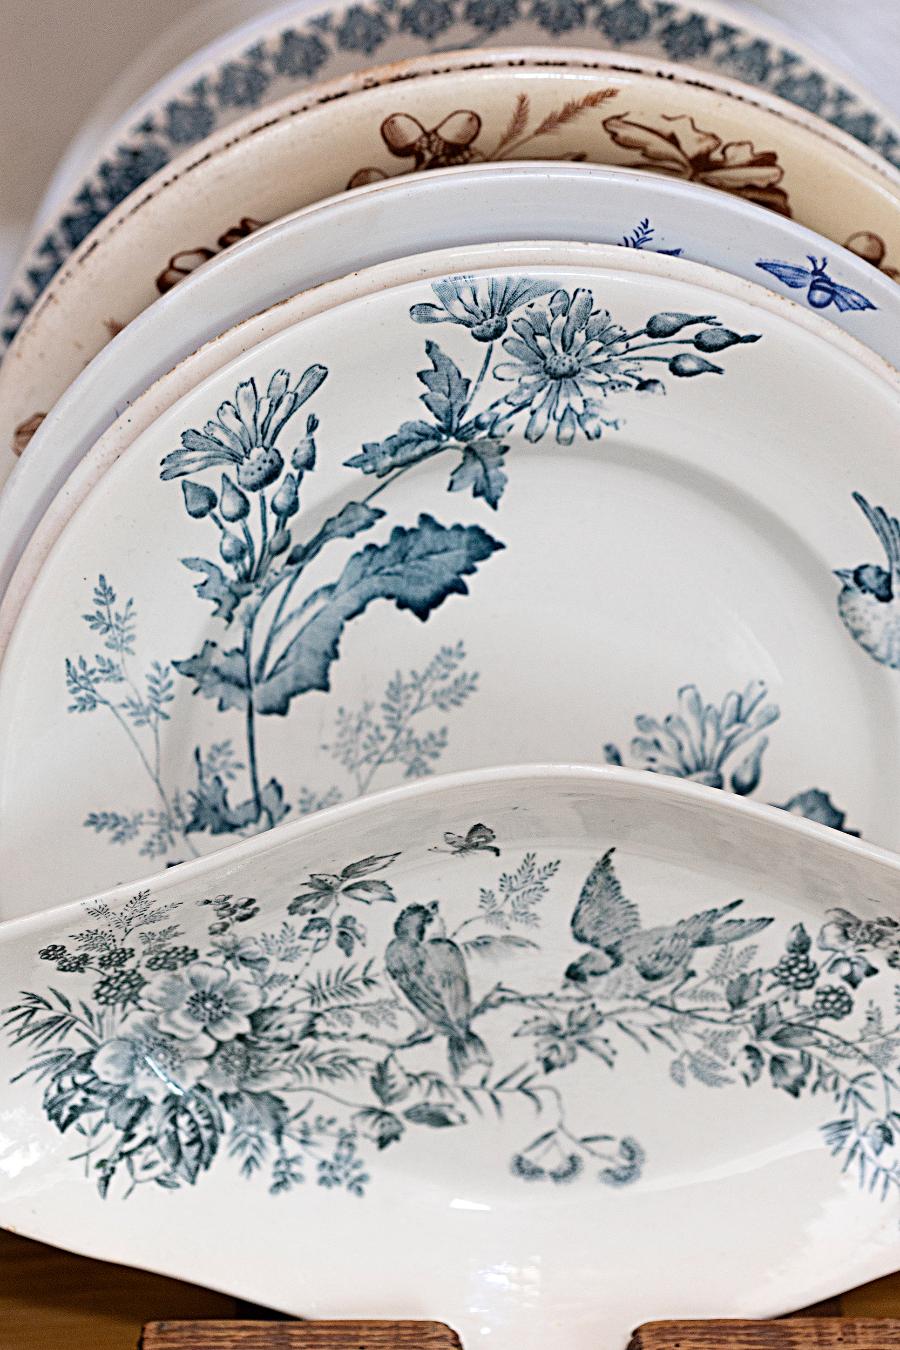 Alexandra kolekcjonuje starą francuską porcelanę. Większość jej zbiorów pochodzi z instagramowego sklepu Belle Epoque Art. (Fot. proksaphotography.com)